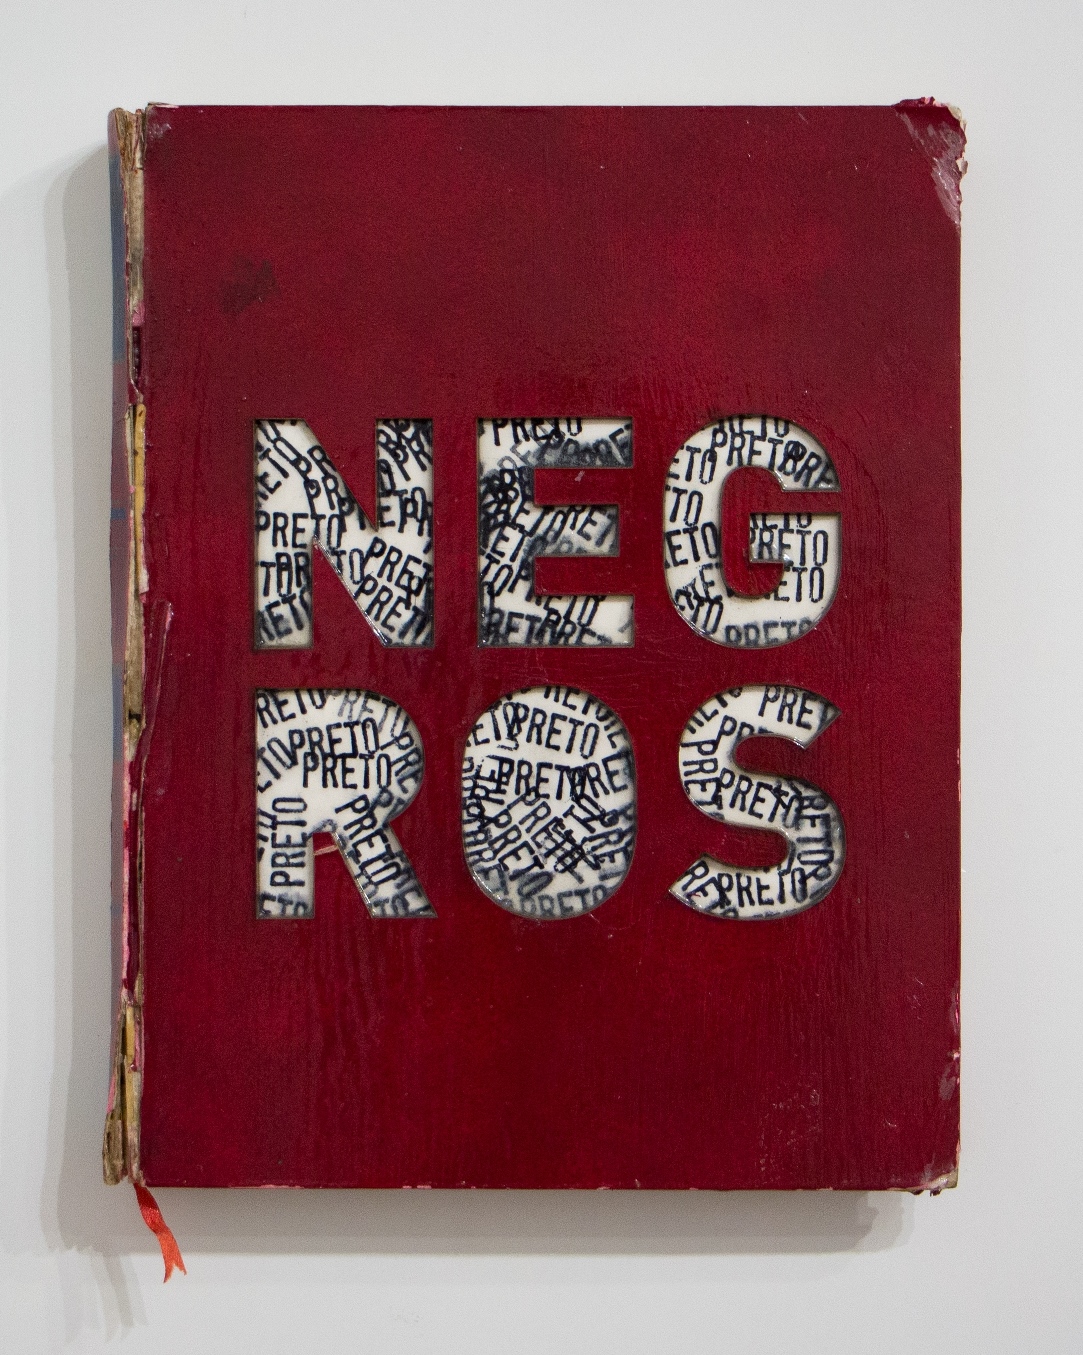 Historia da Arte – Negros/Pretos, 2019. Objeto recorte, livro cortado a laser e carimbado com a palavra PRETO, 30x23x2,5cm.